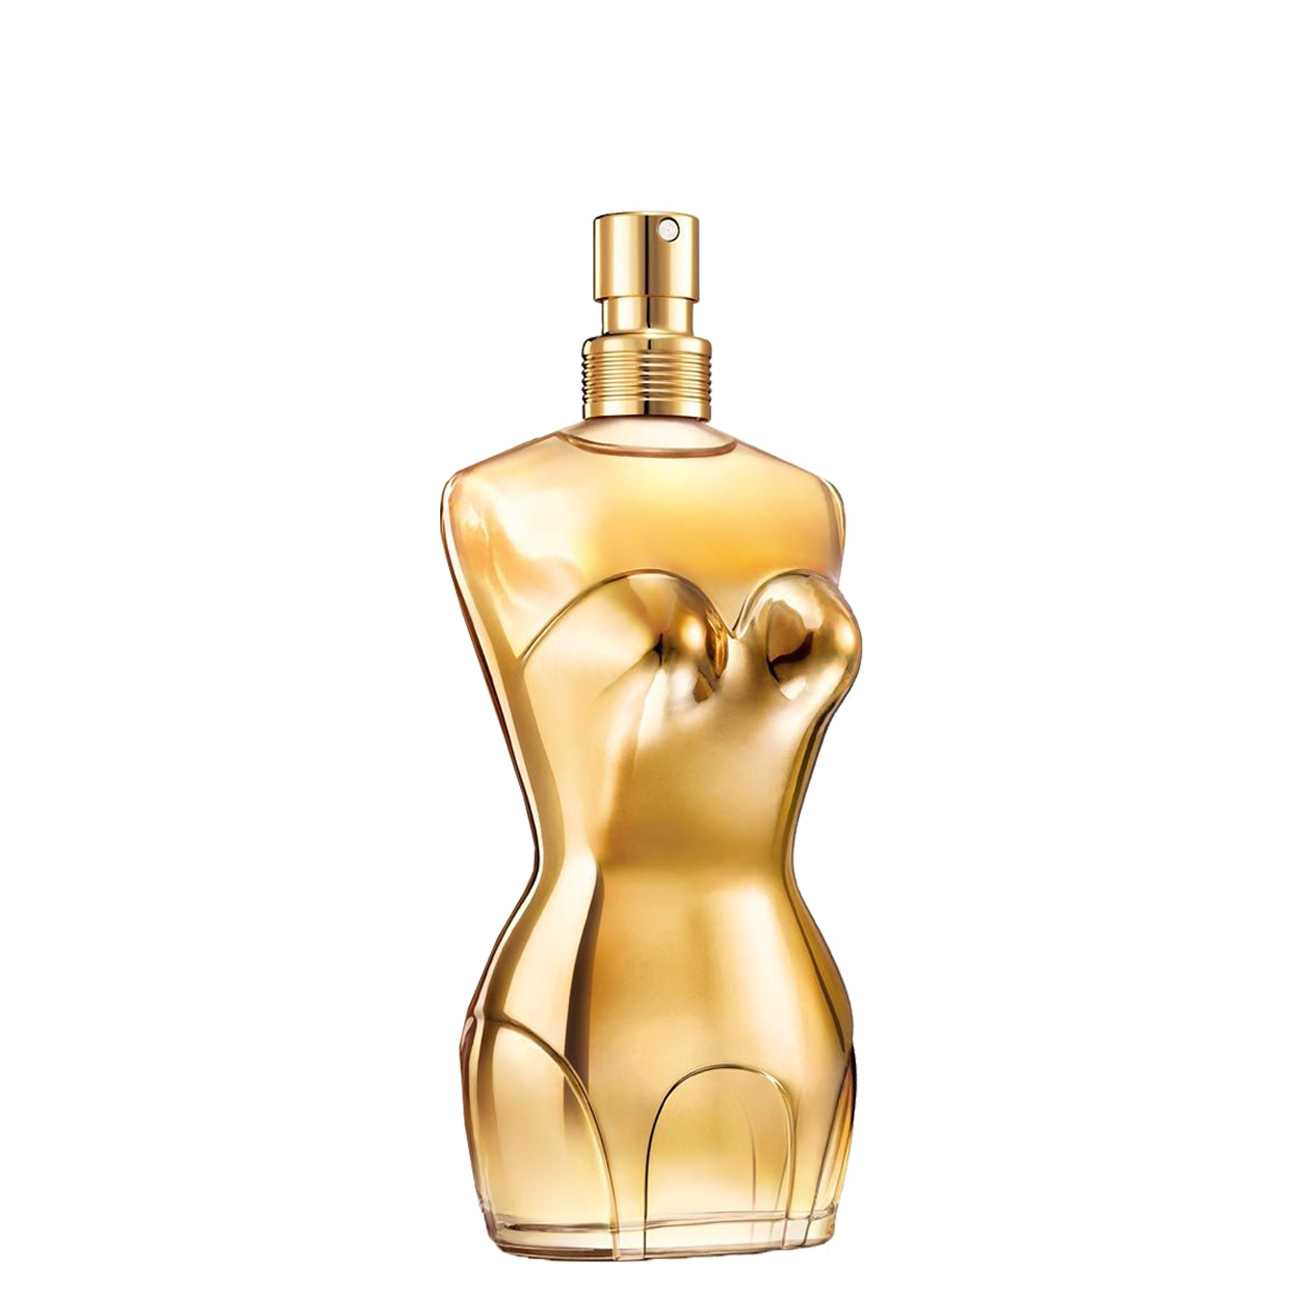 Apa de Parfum Jean Paul Gaultier CLASSIQUE INTENSE 100ml cu comanda online